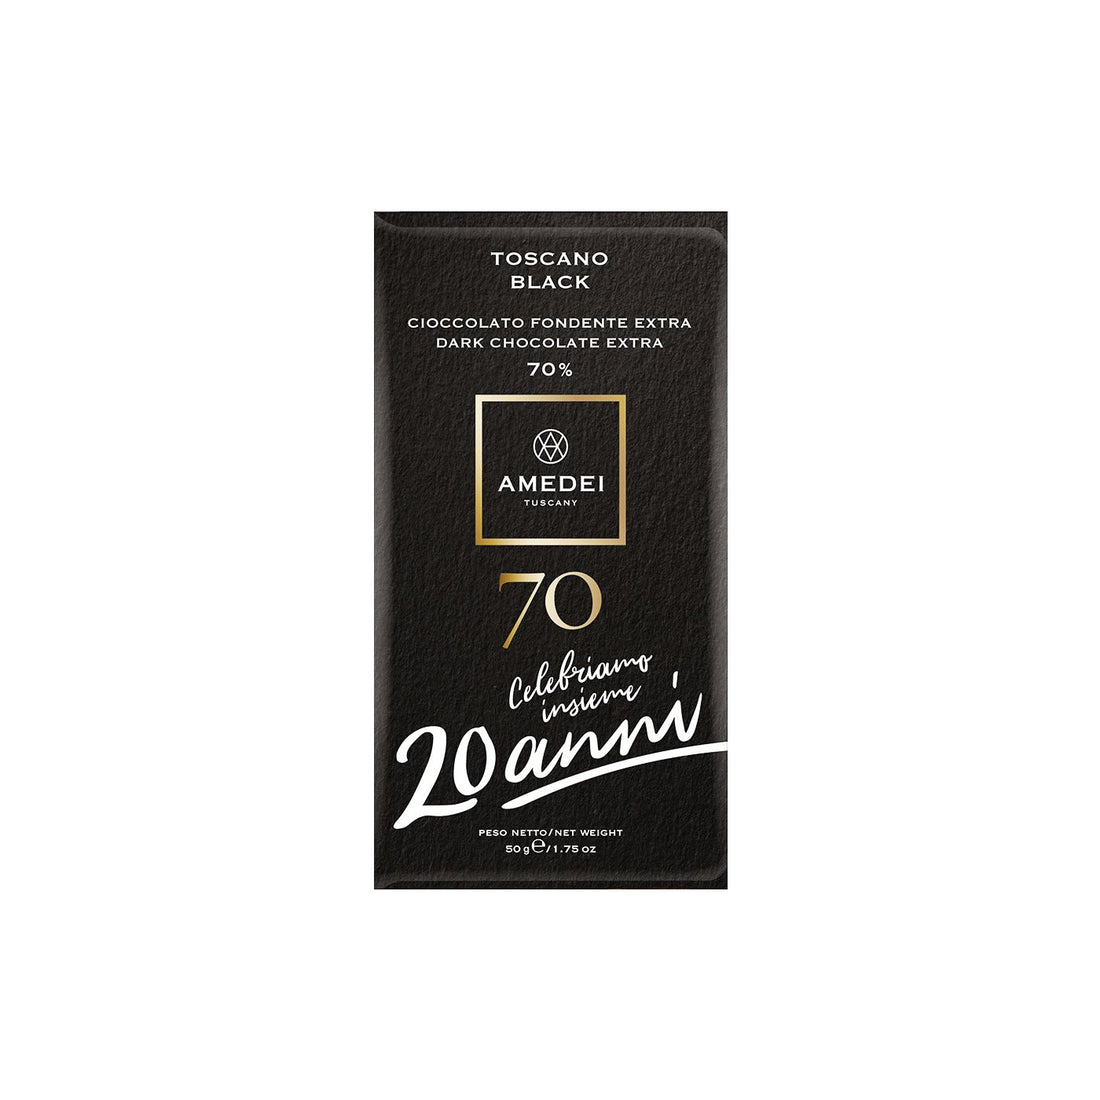 Toscano Black 70 Special Edition